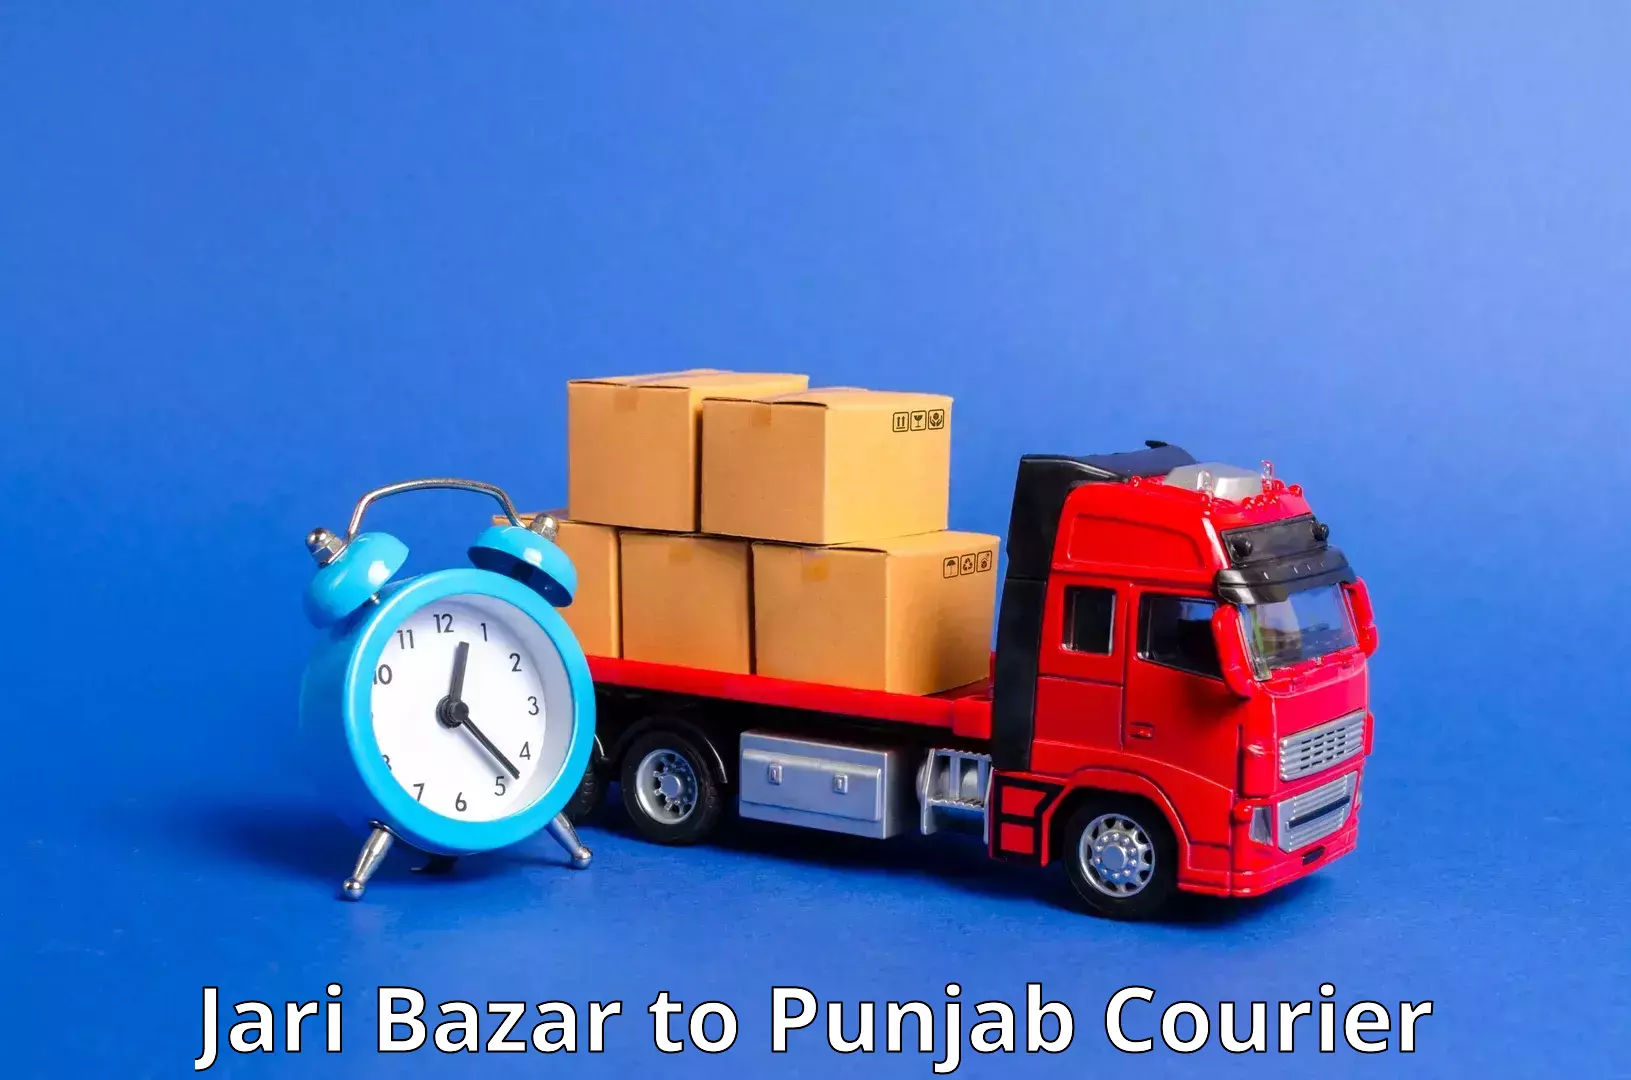 Doorstep delivery service Jari Bazar to Ludhiana